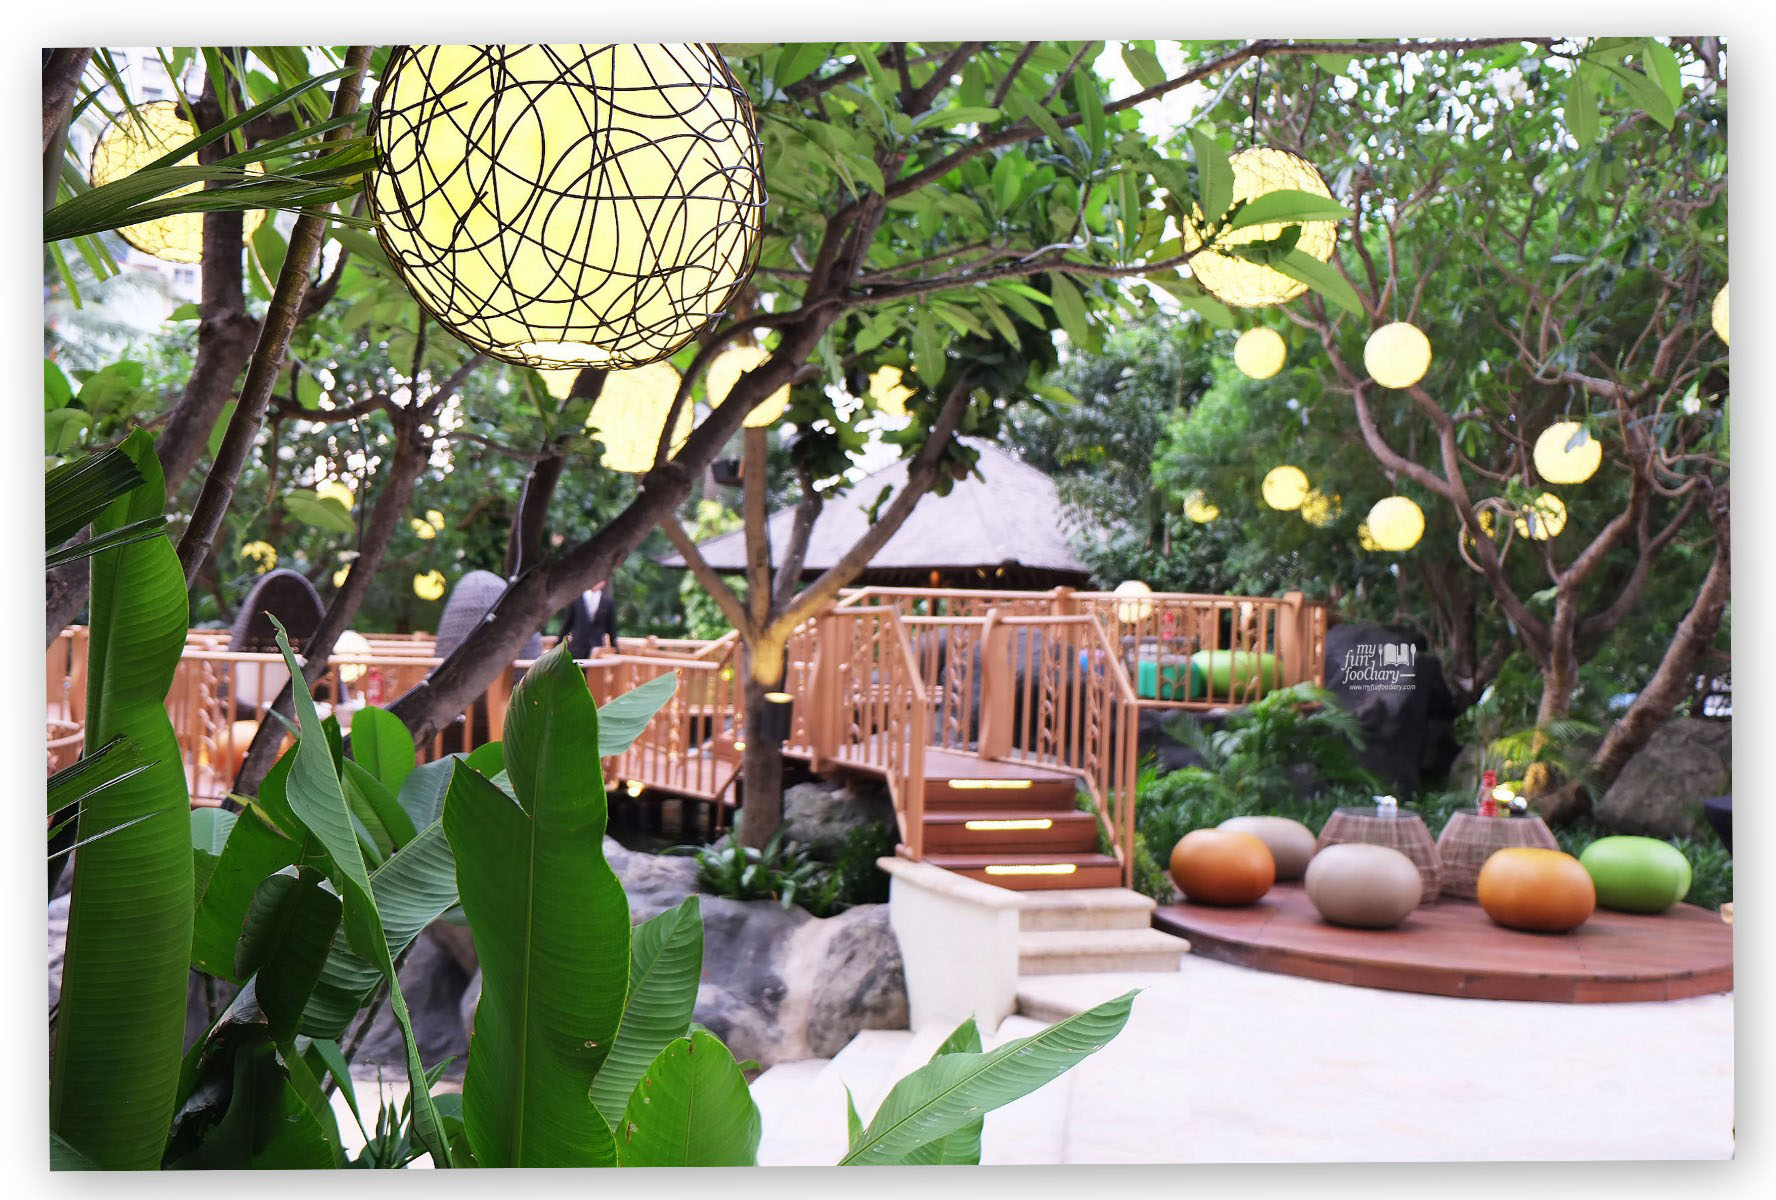 Beautiful View at JimBARan Outdoor Lounge Intercontinental MidPlaza by Myfunfoodiary